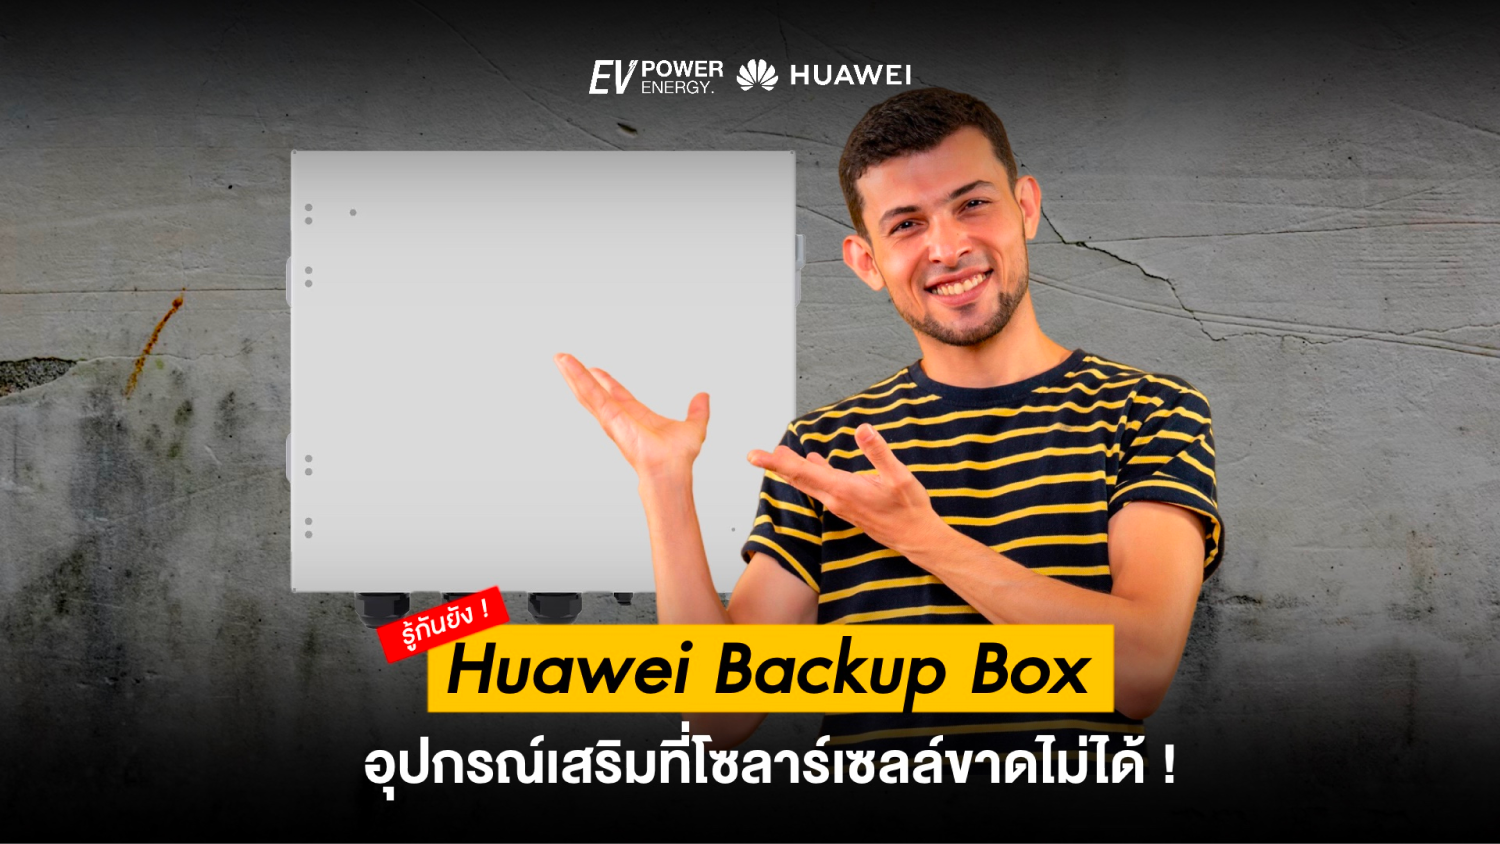 Huawei Backup Box อุปกรณ์เสริมที่โซล่าเซลล์ขาดไม่ได้